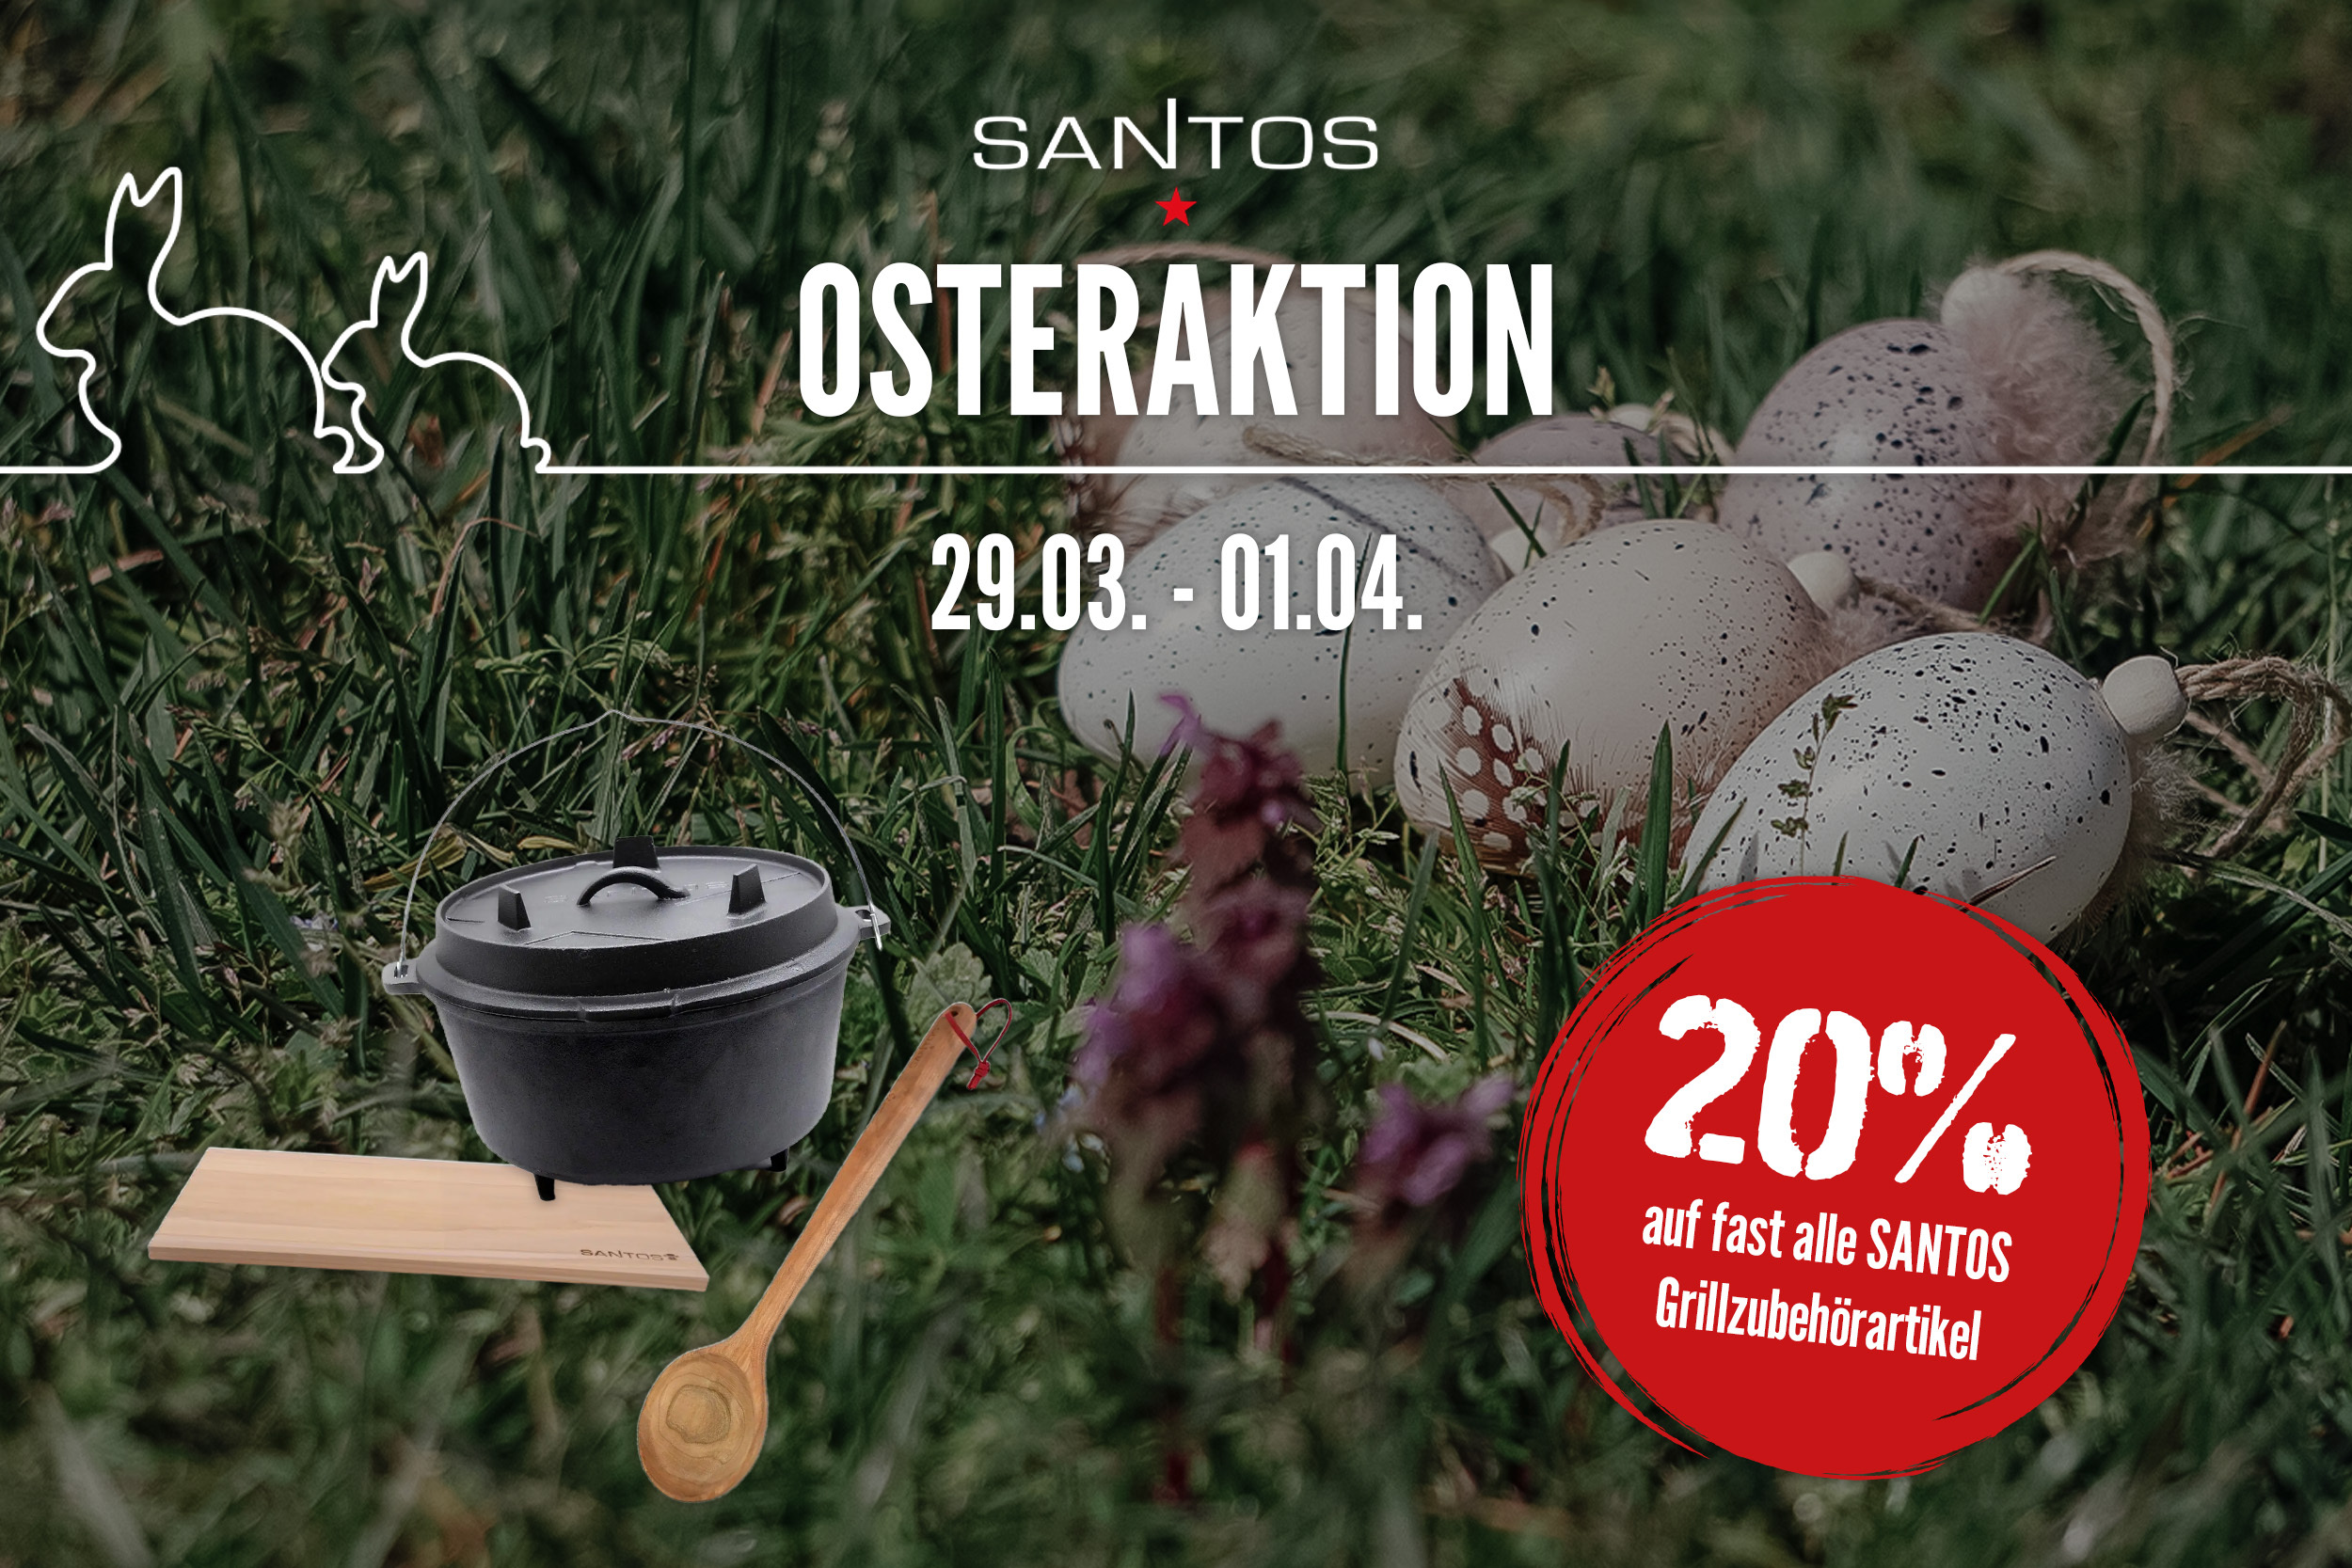 Osteraktion bei SANTOS – jetzt sparen!